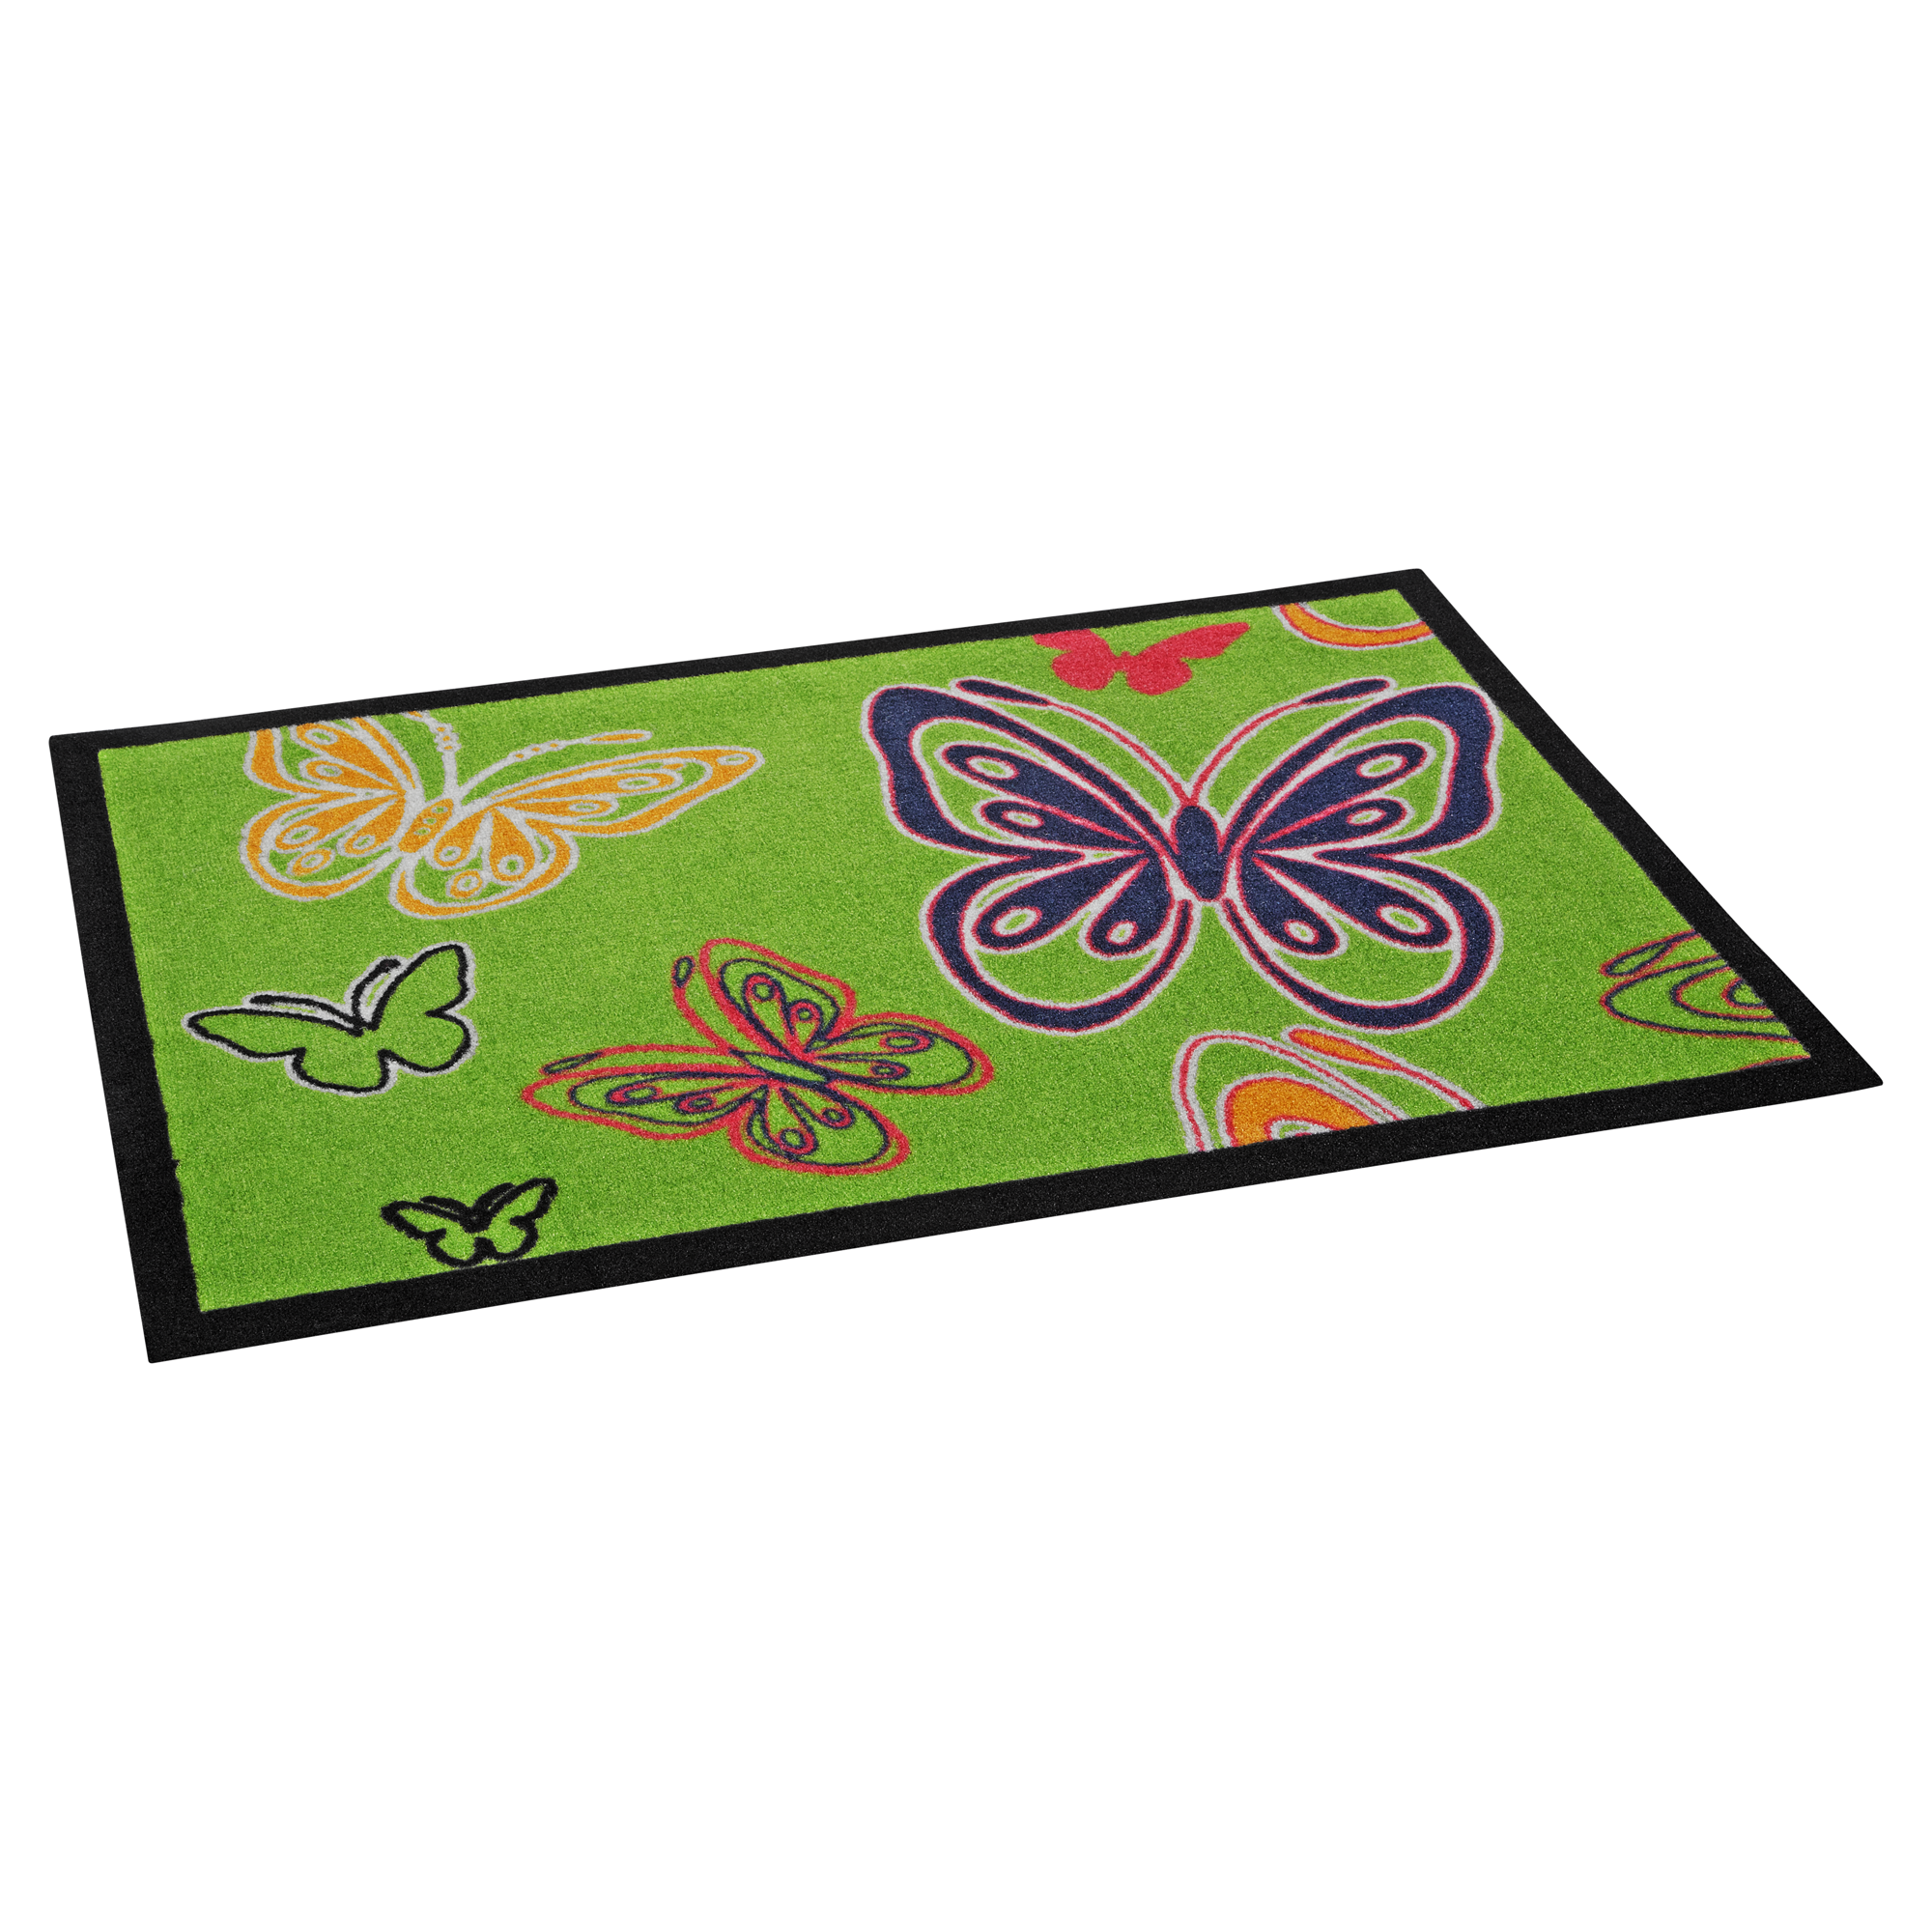 Sauberlaufmatte 'Schmetterling' 70 x 50 cm grün + product picture